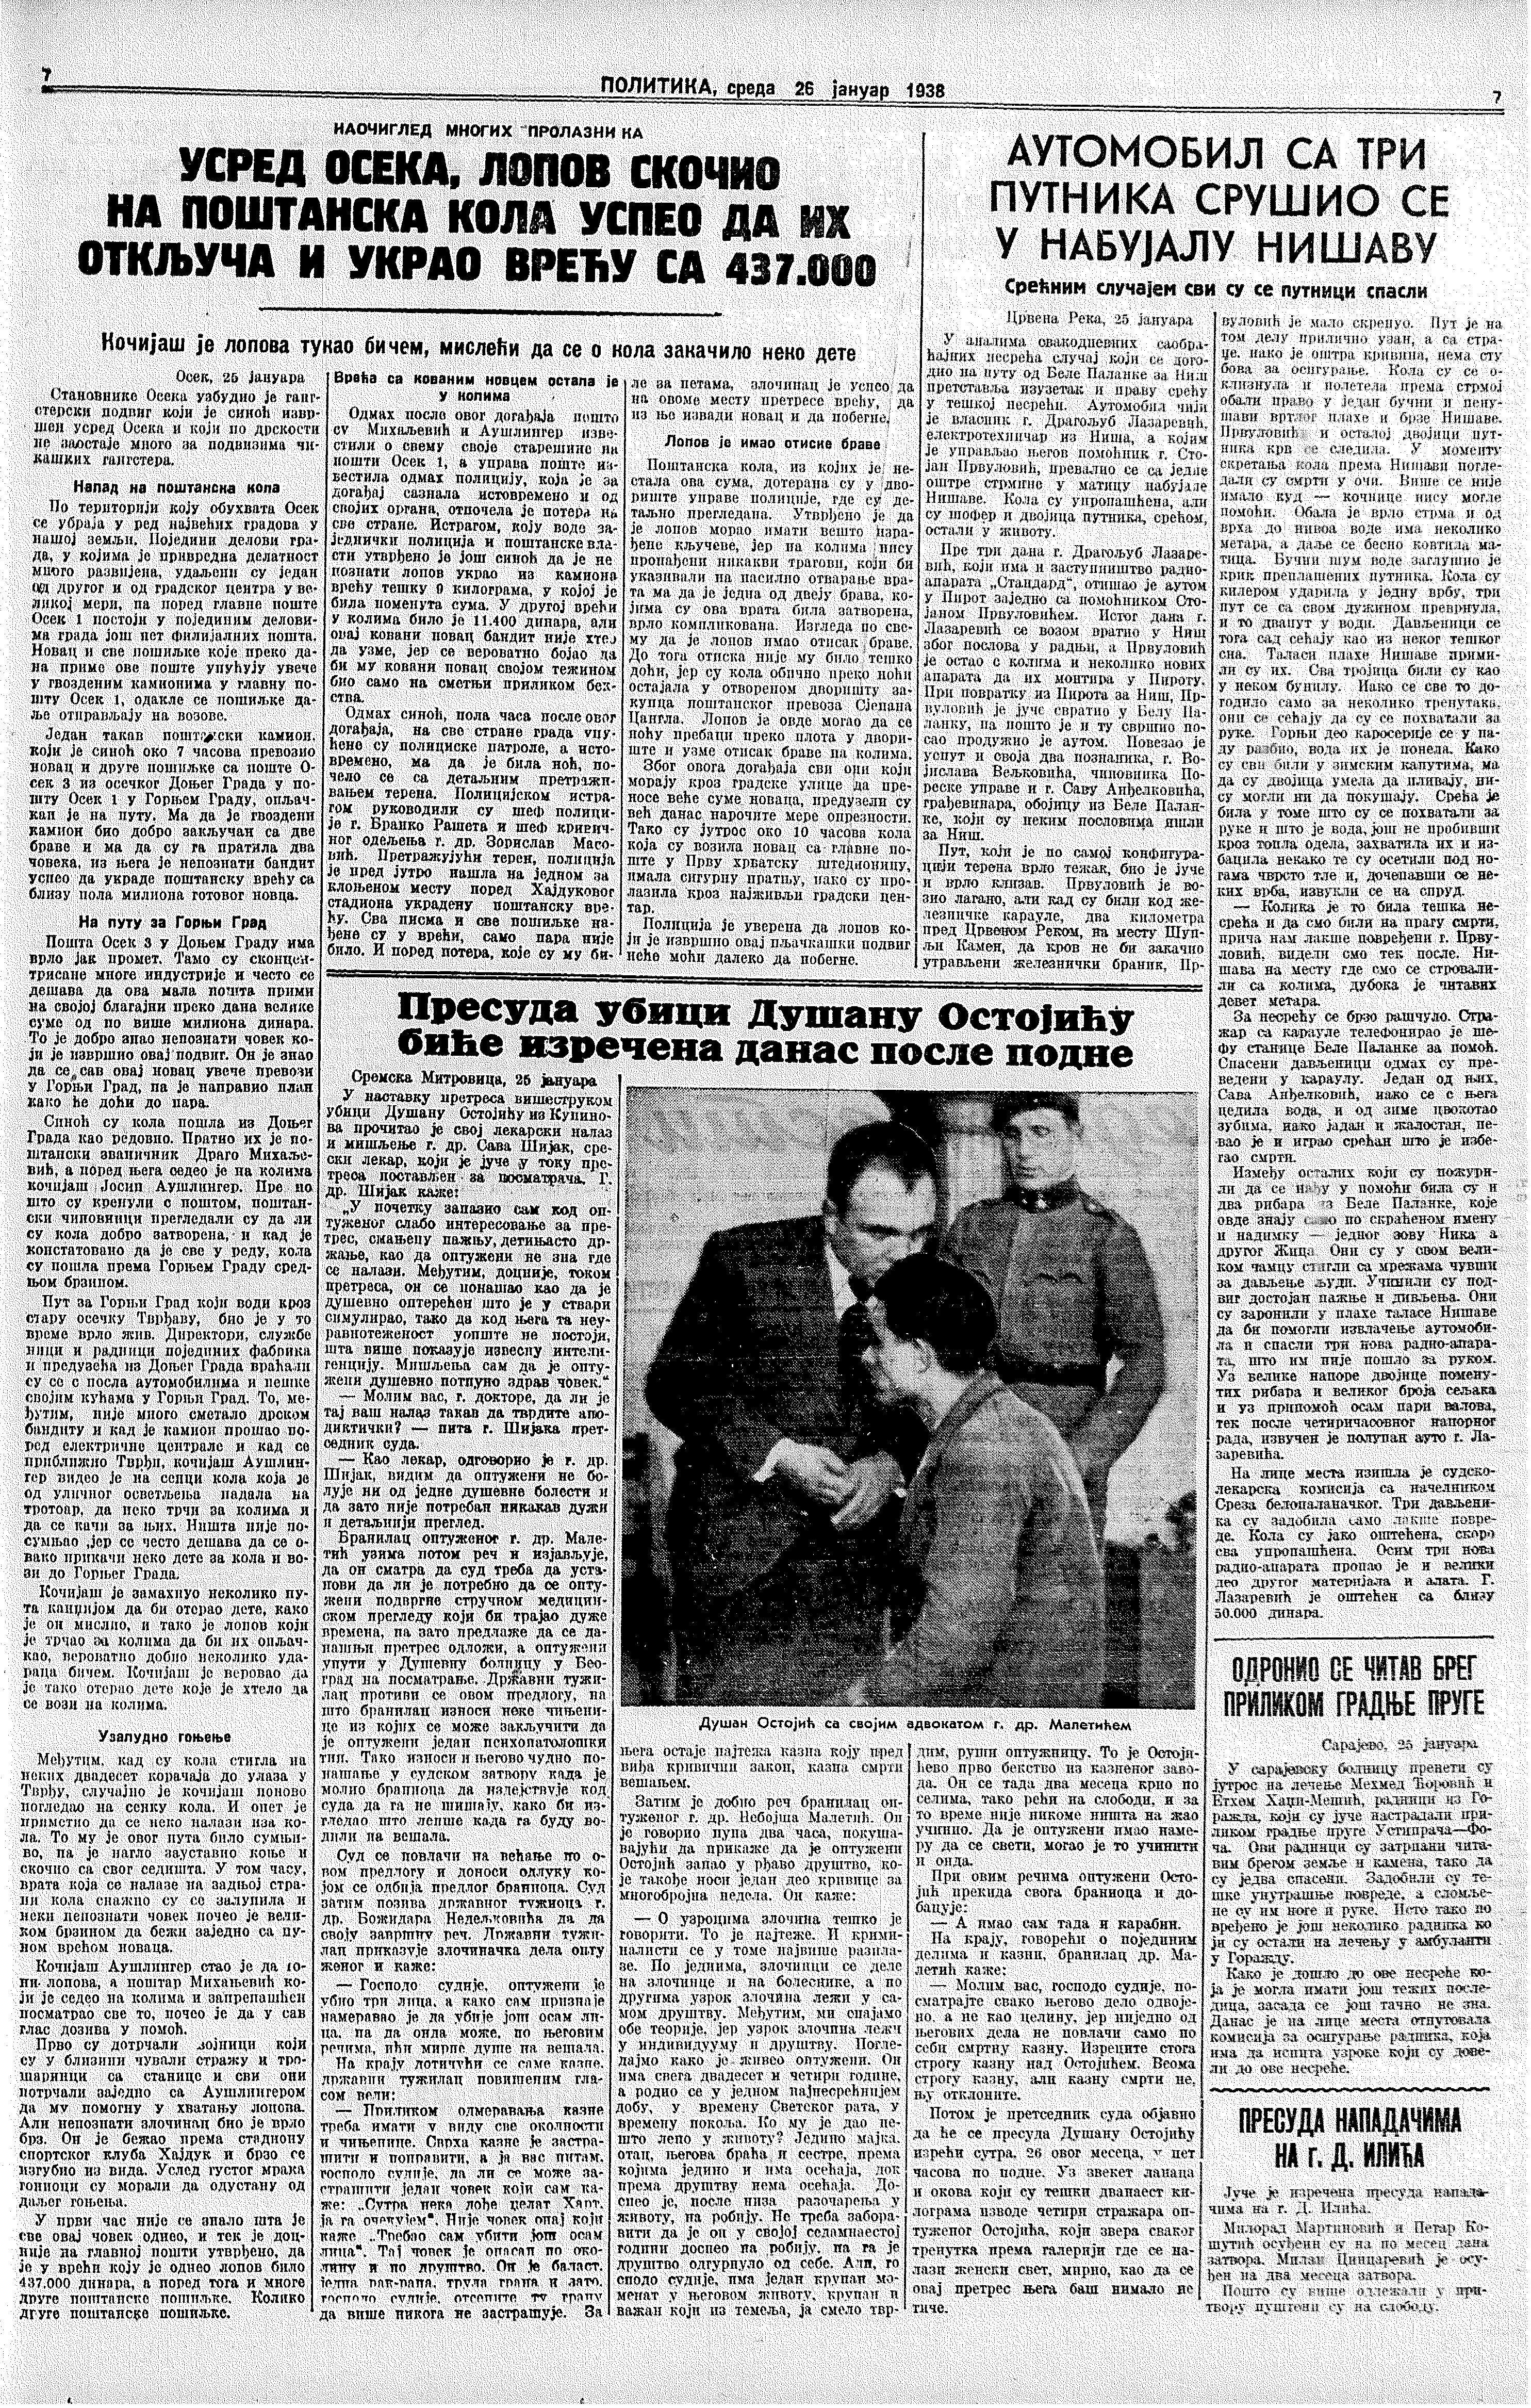 Presuda ubici, Politika, 26.01.1938